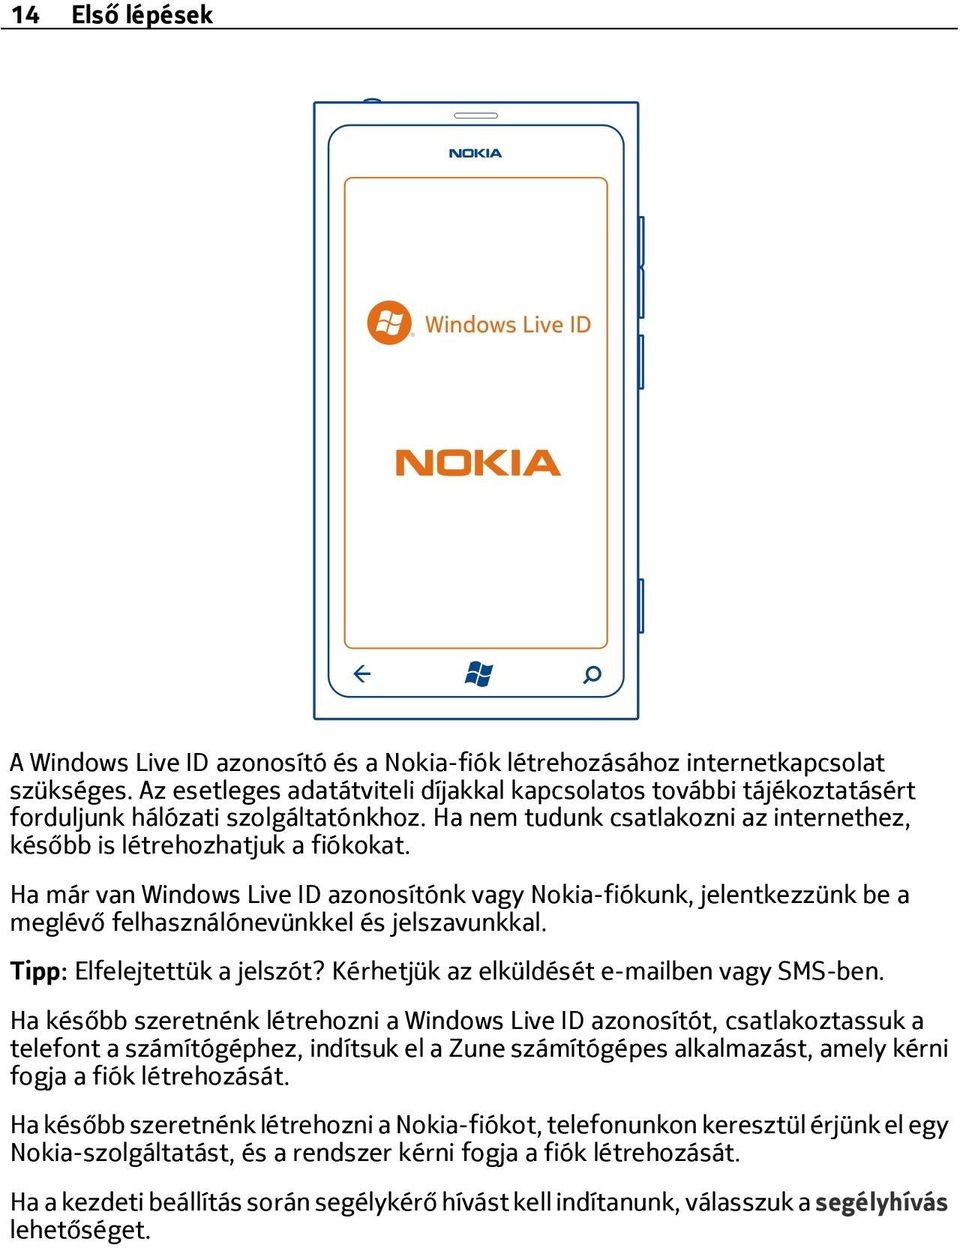 Ha már van Windows Live ID azonosítónk vagy Nokia-fiókunk, jelentkezzünk be a meglévő felhasználónevünkkel és jelszavunkkal. Tipp: Elfelejtettük a jelszót?